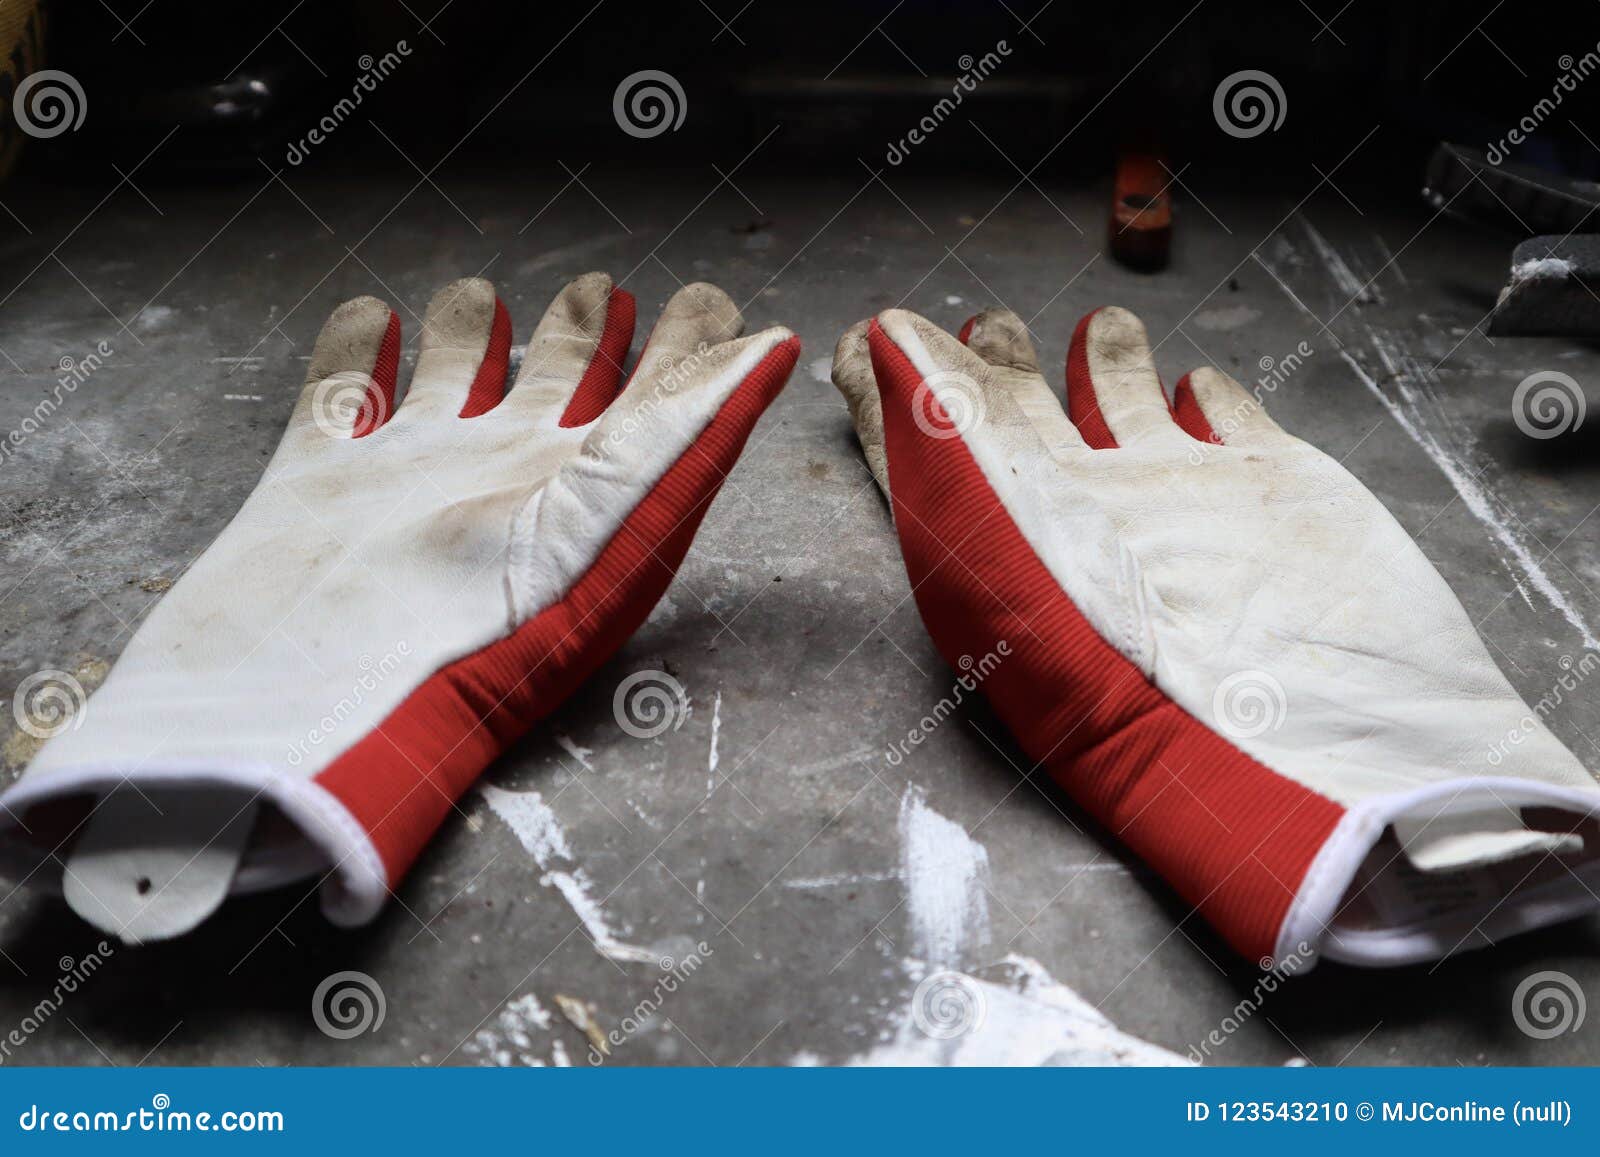 Arbeta i trädgården handskar på arbetsbänken. Rött och vit som arbeta i trädgården handskar på den industriella arbetsbänken i seminarium